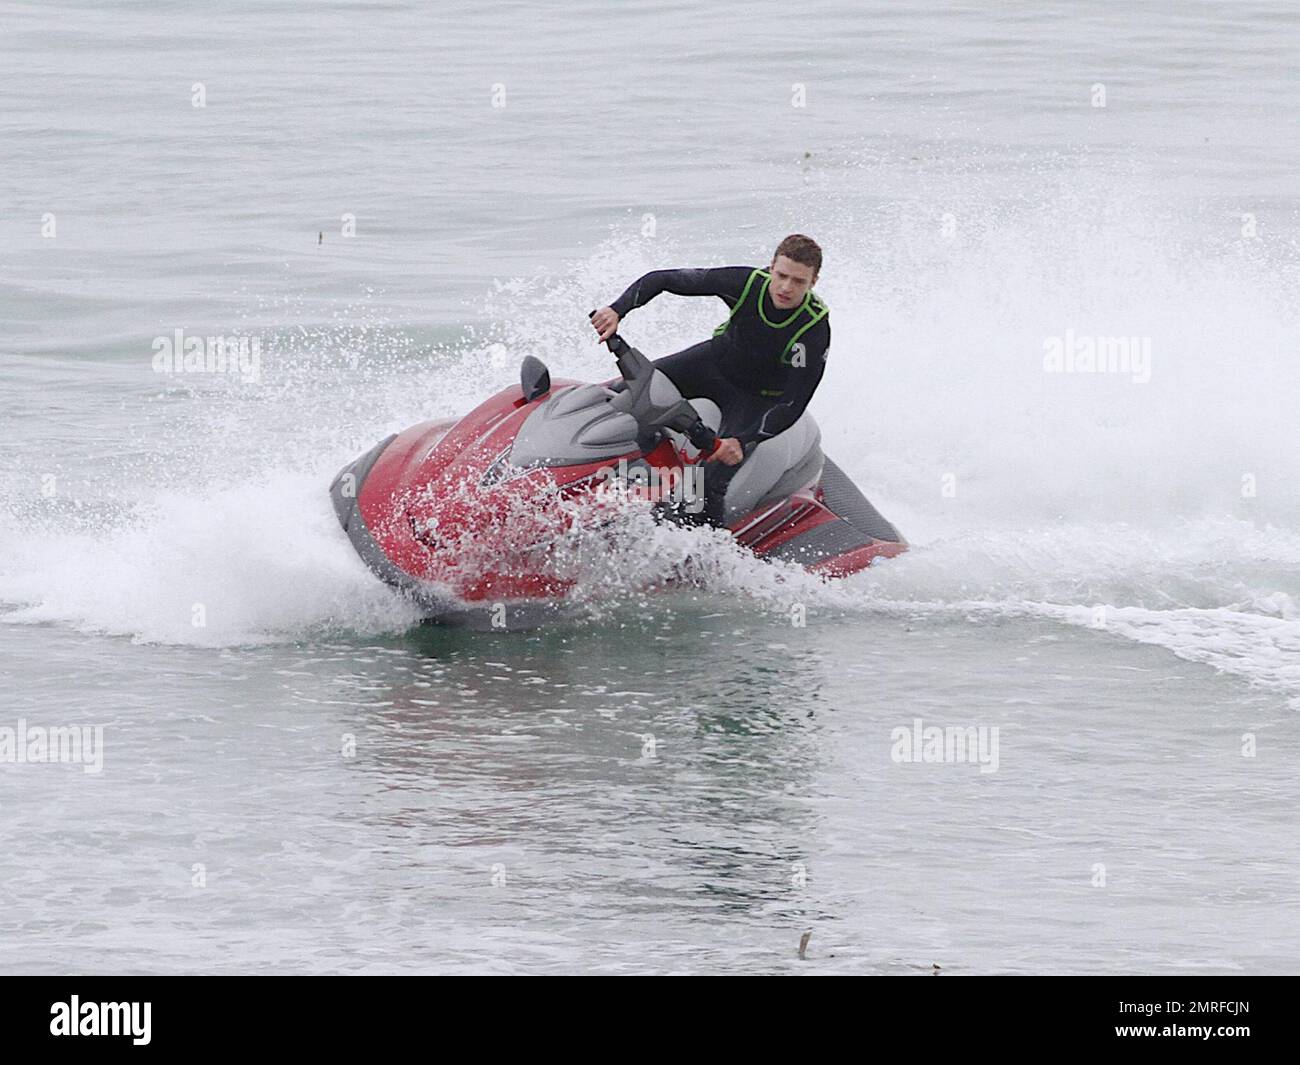 Justin Timberlake fait le tour de l'océan lors d'un jet-ski tout en filmant  une scène pour son nouveau film « Friends with Benefits » dans Malibu. Vêtu  d'une combinaison noire Timberlake, l'équipage